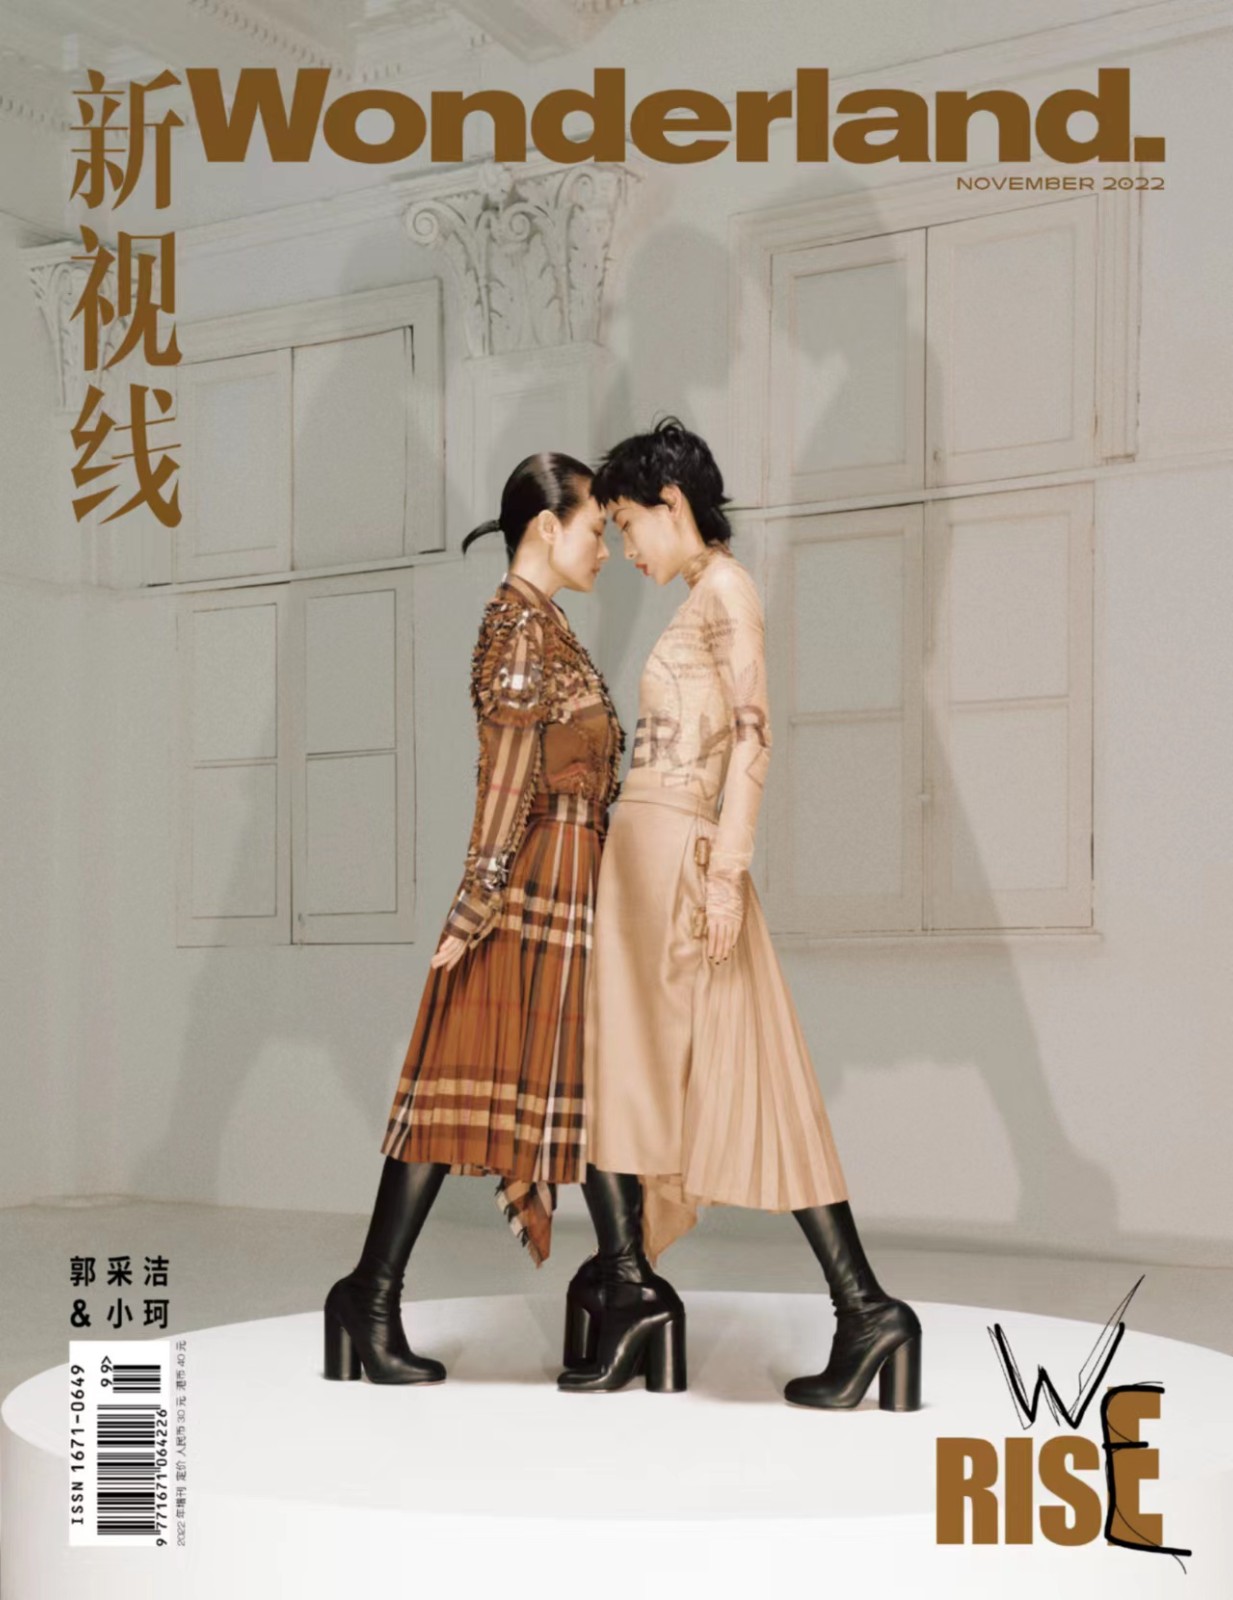 郭采洁《再见爱人2》温情输出 全新杂志封面置身艺术解读自我